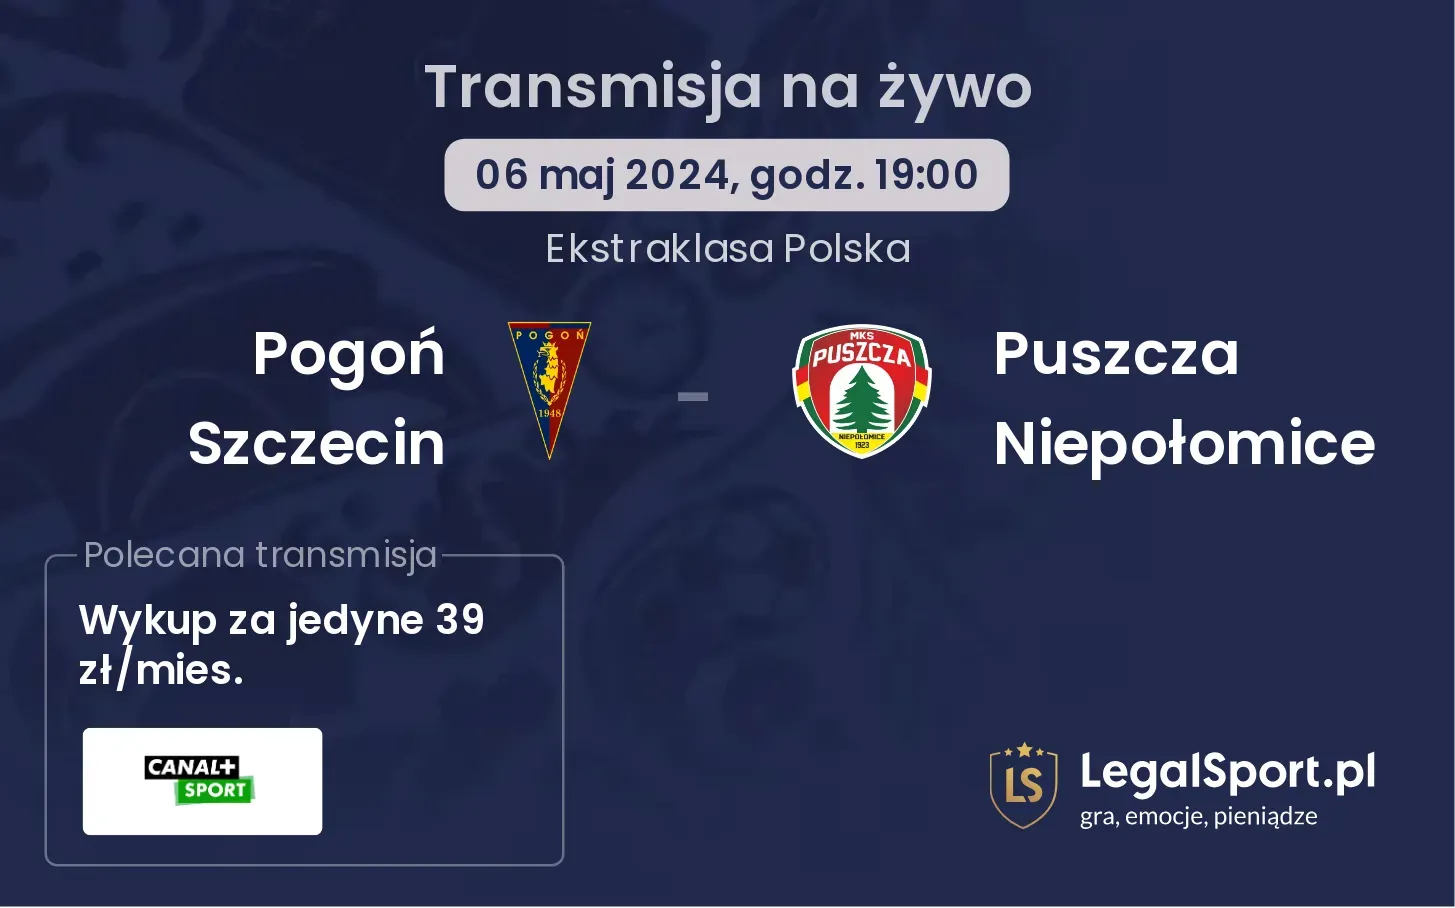 Pogoń Szczecin - Puszcza Niepołomice transmisja na żywo